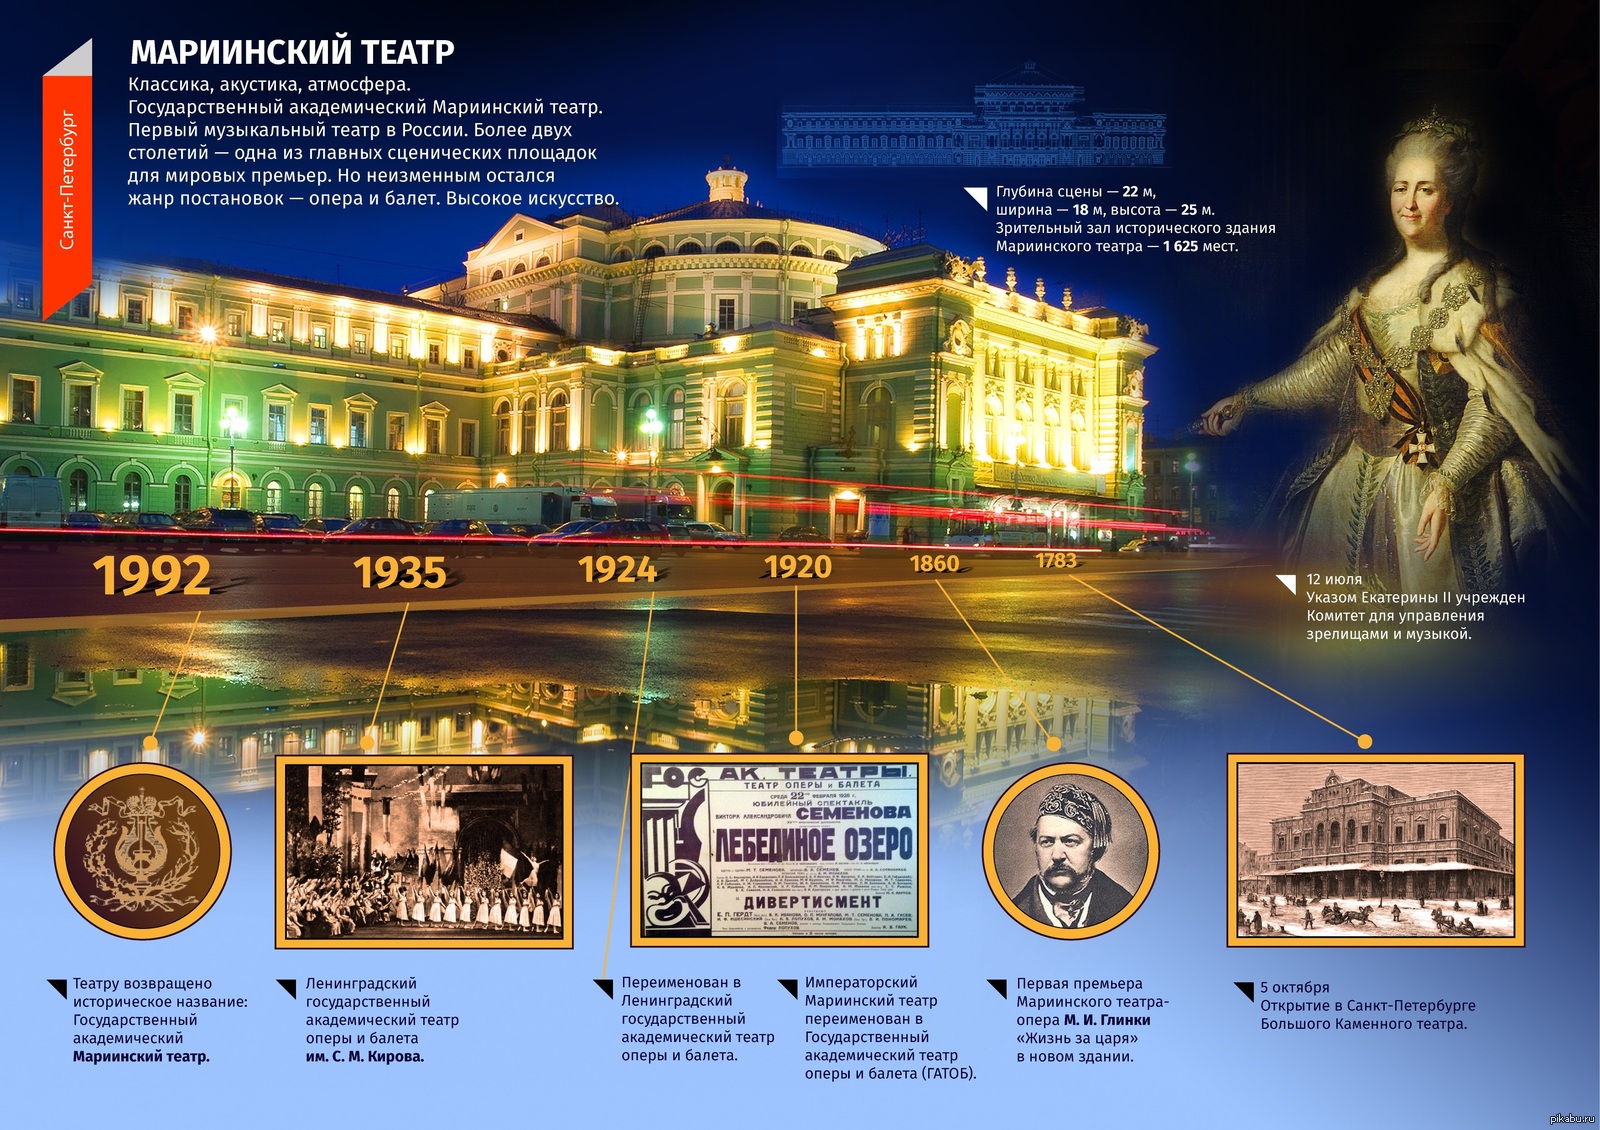 Мариинский театр назван. Мариинский театр в Петербурге 1783 г. Большой Мариинский театр в Санкт-Петербурге. Мариинский театр в 1783 году.